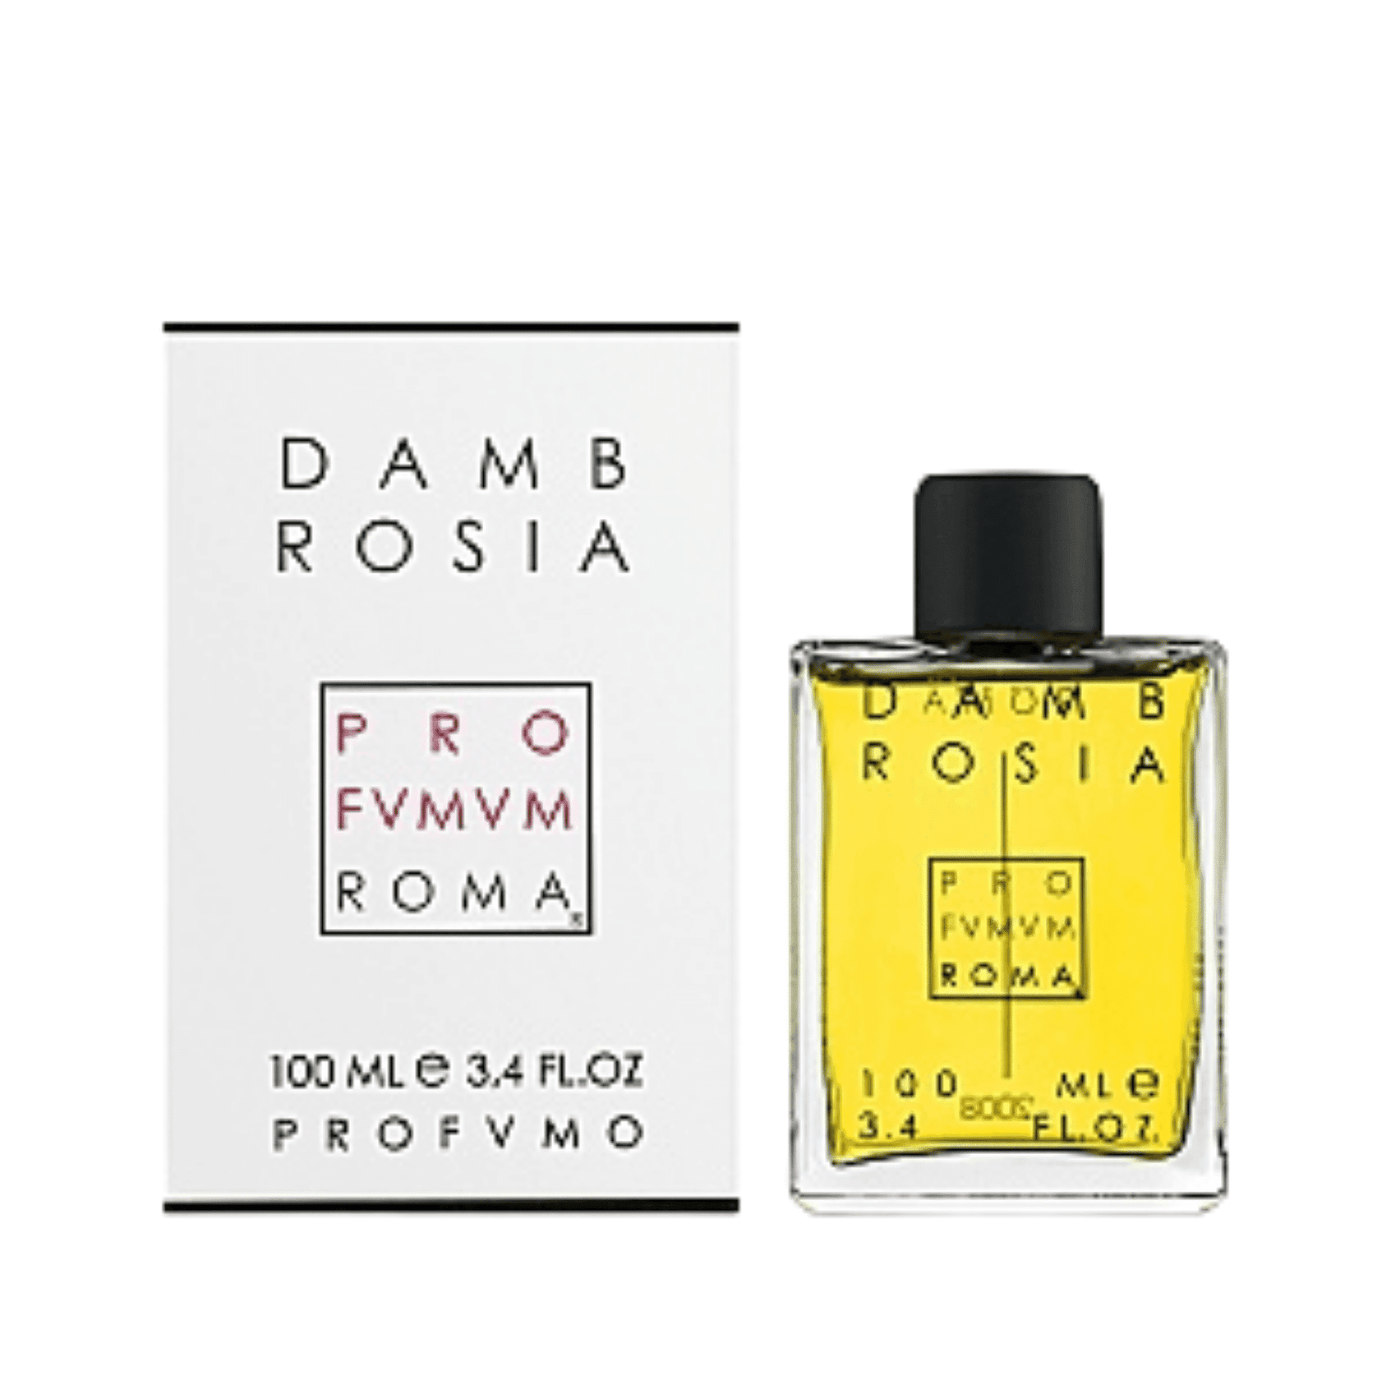 Dambrosia perfume